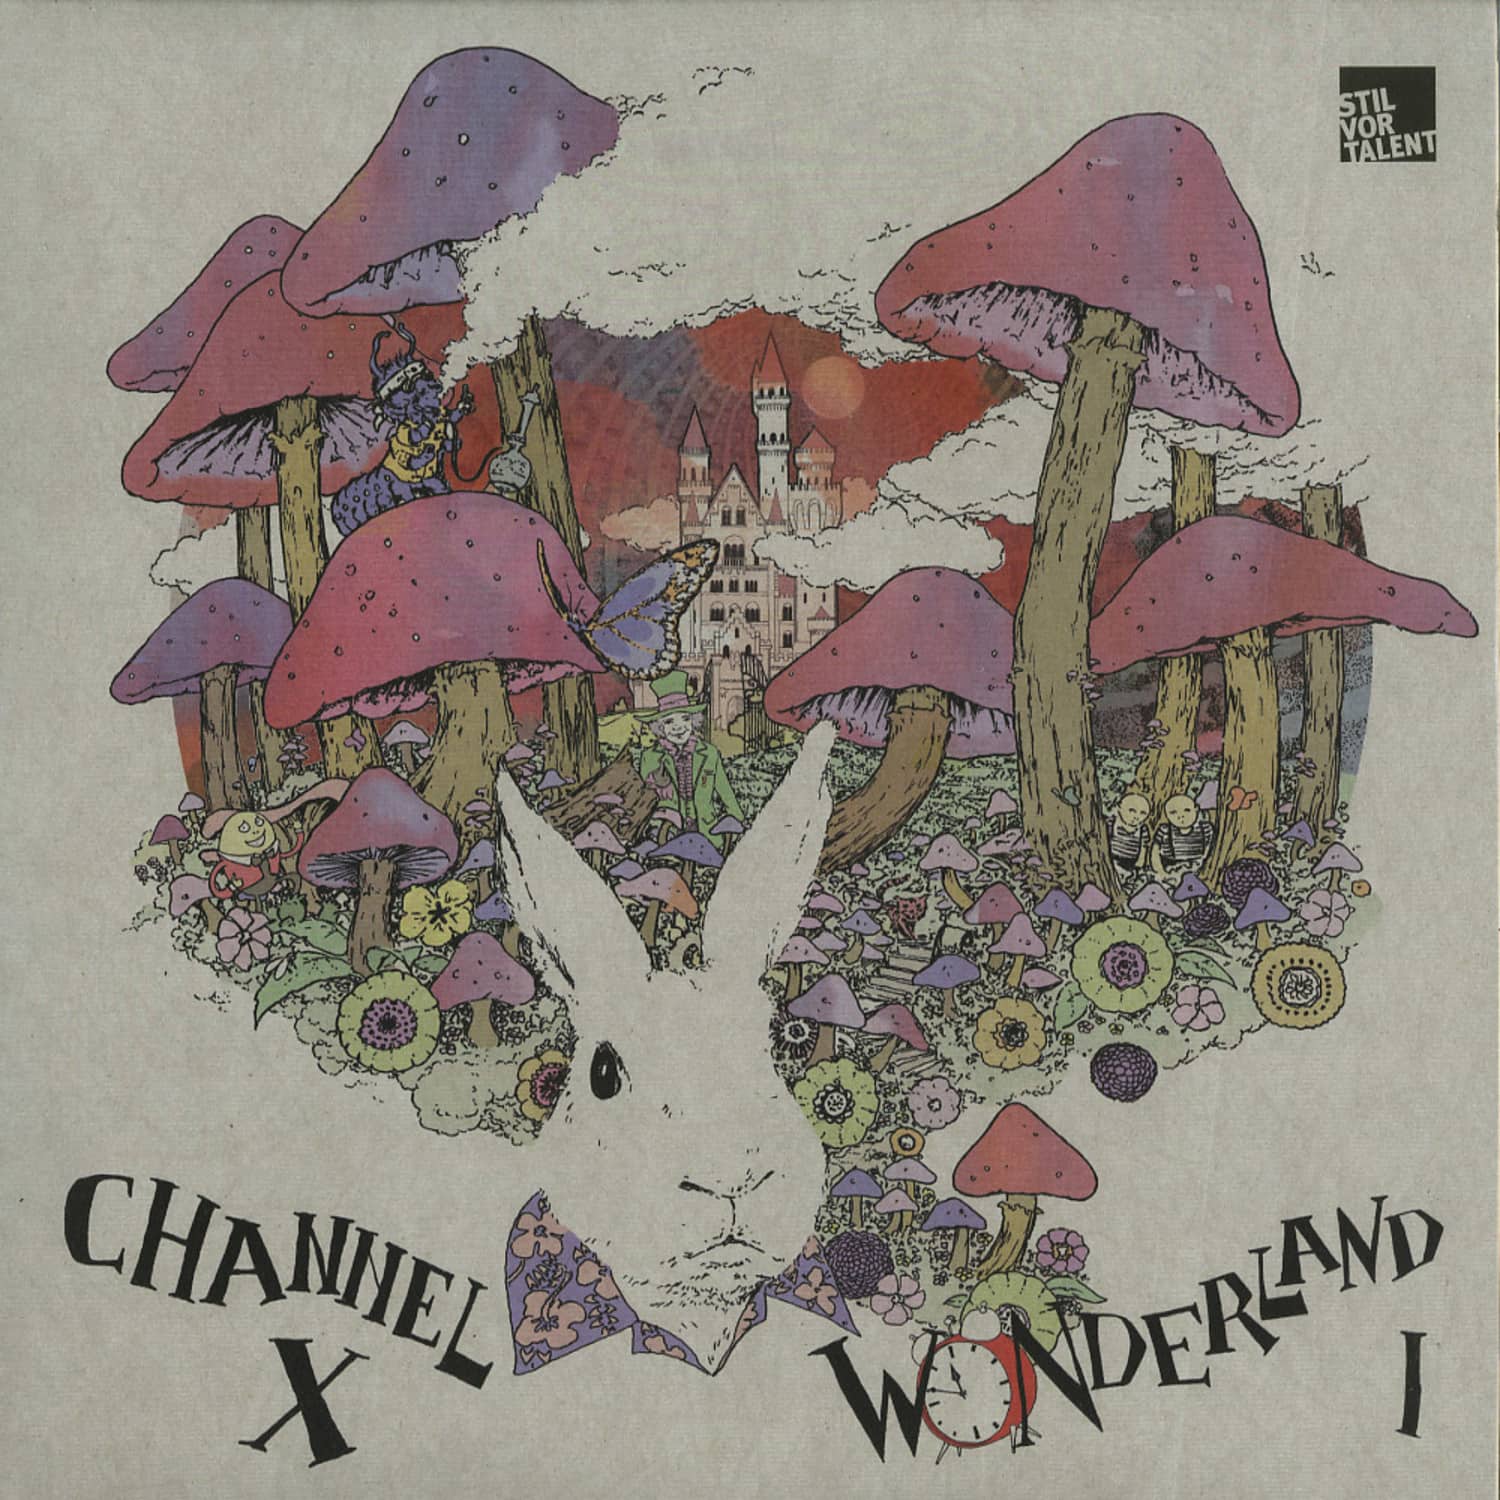 Channel X - WONDERLAND - PART 1